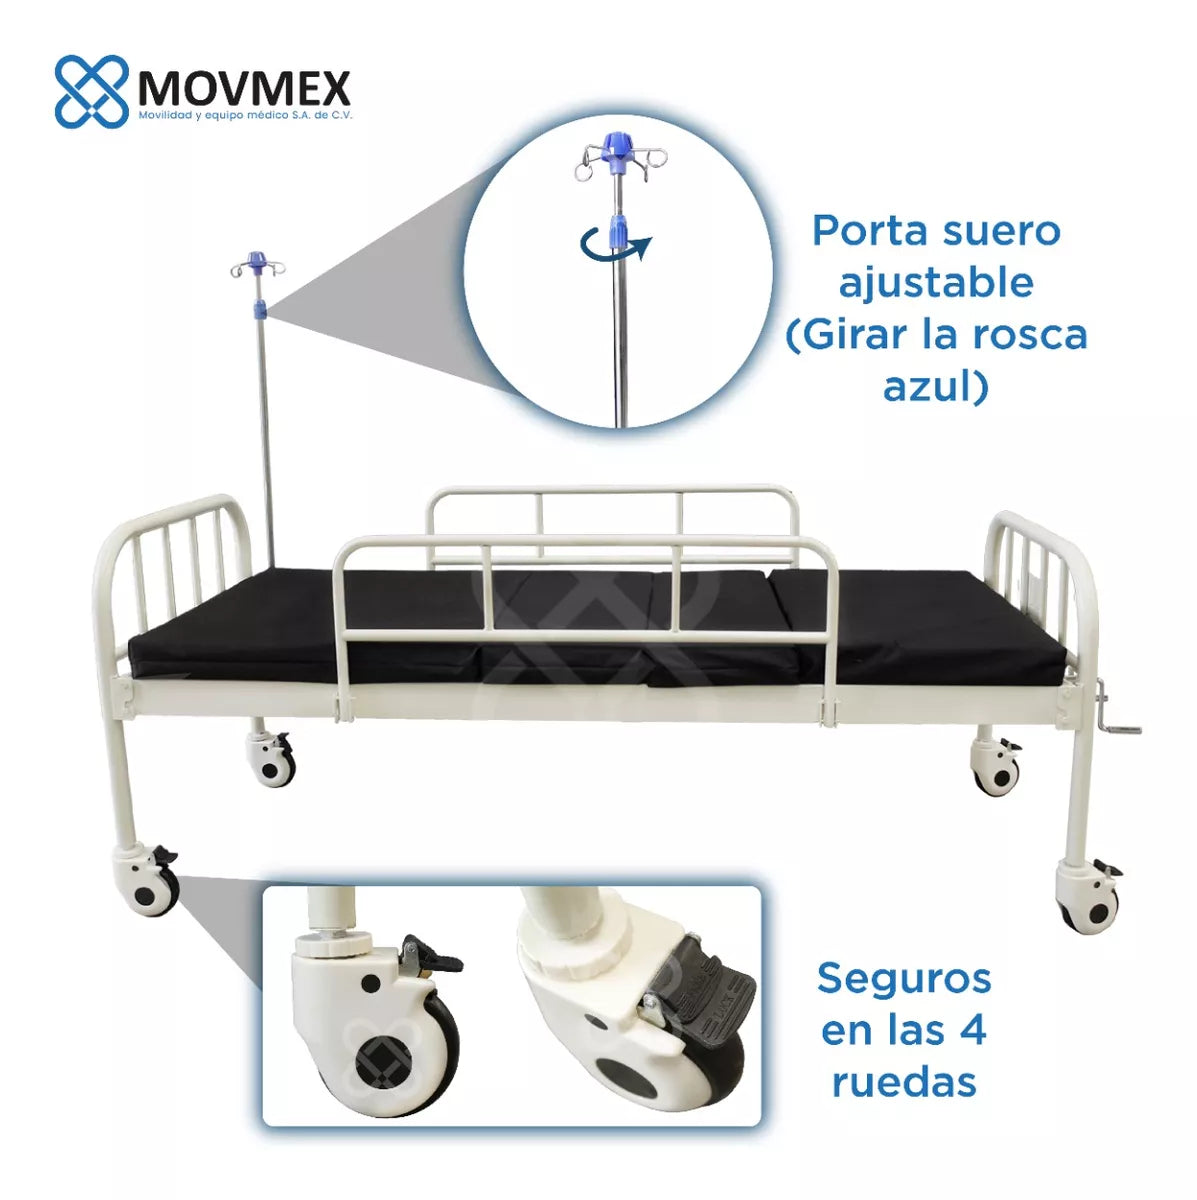 Cama Hospitalaria Manual De 2 Posiciones + Colchón 4 Secciones Hipócrates Movmex